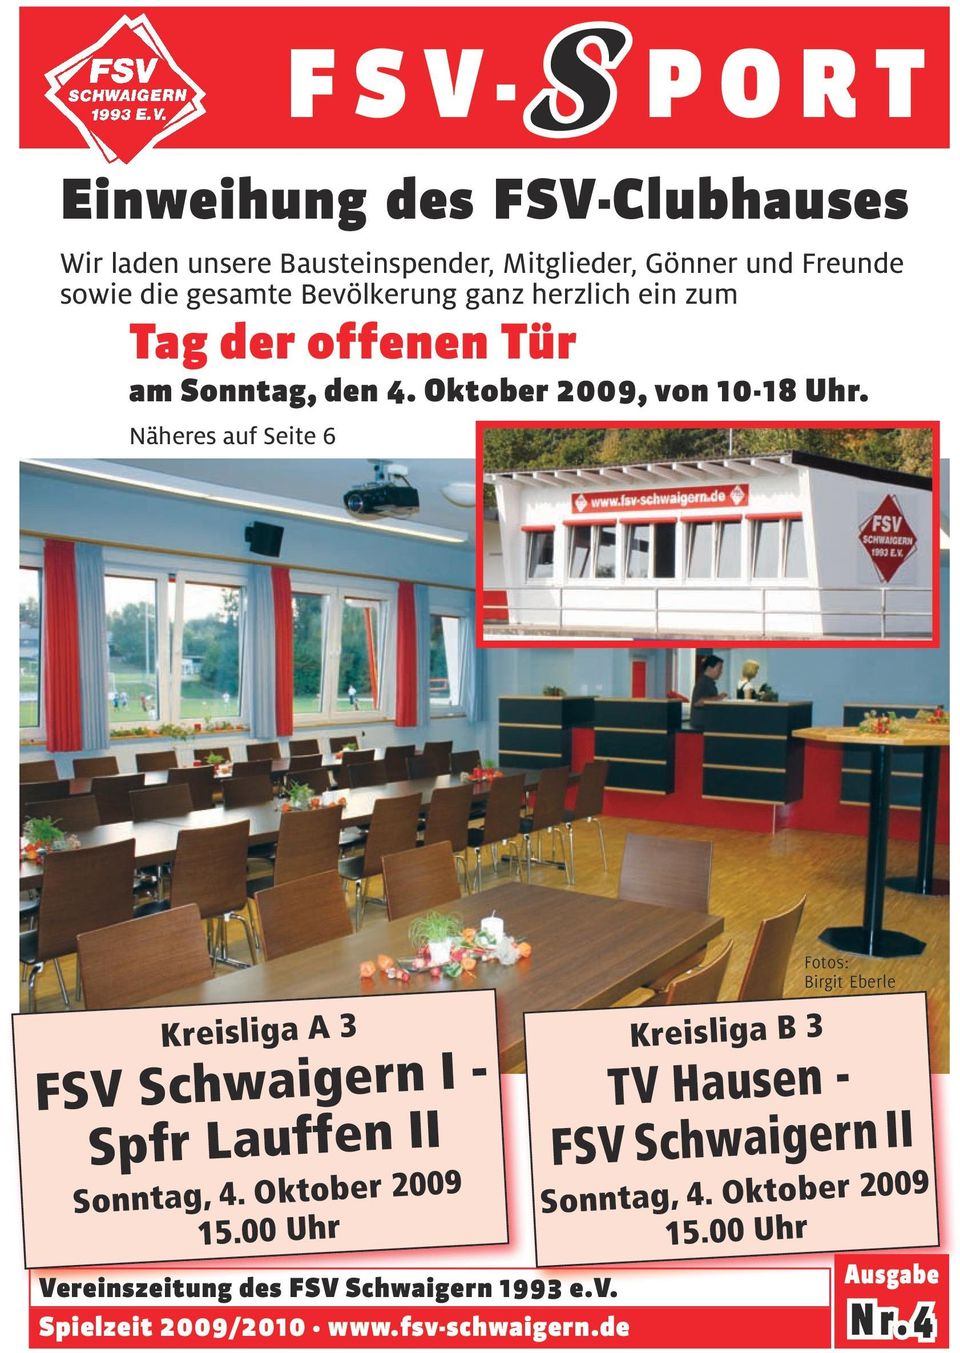 Näheres auf Seite 6 Kreisliga A 3 FSV Schwaigern I - Spfr Lauffen II Sonntag, 4. Oktober 2009 15.